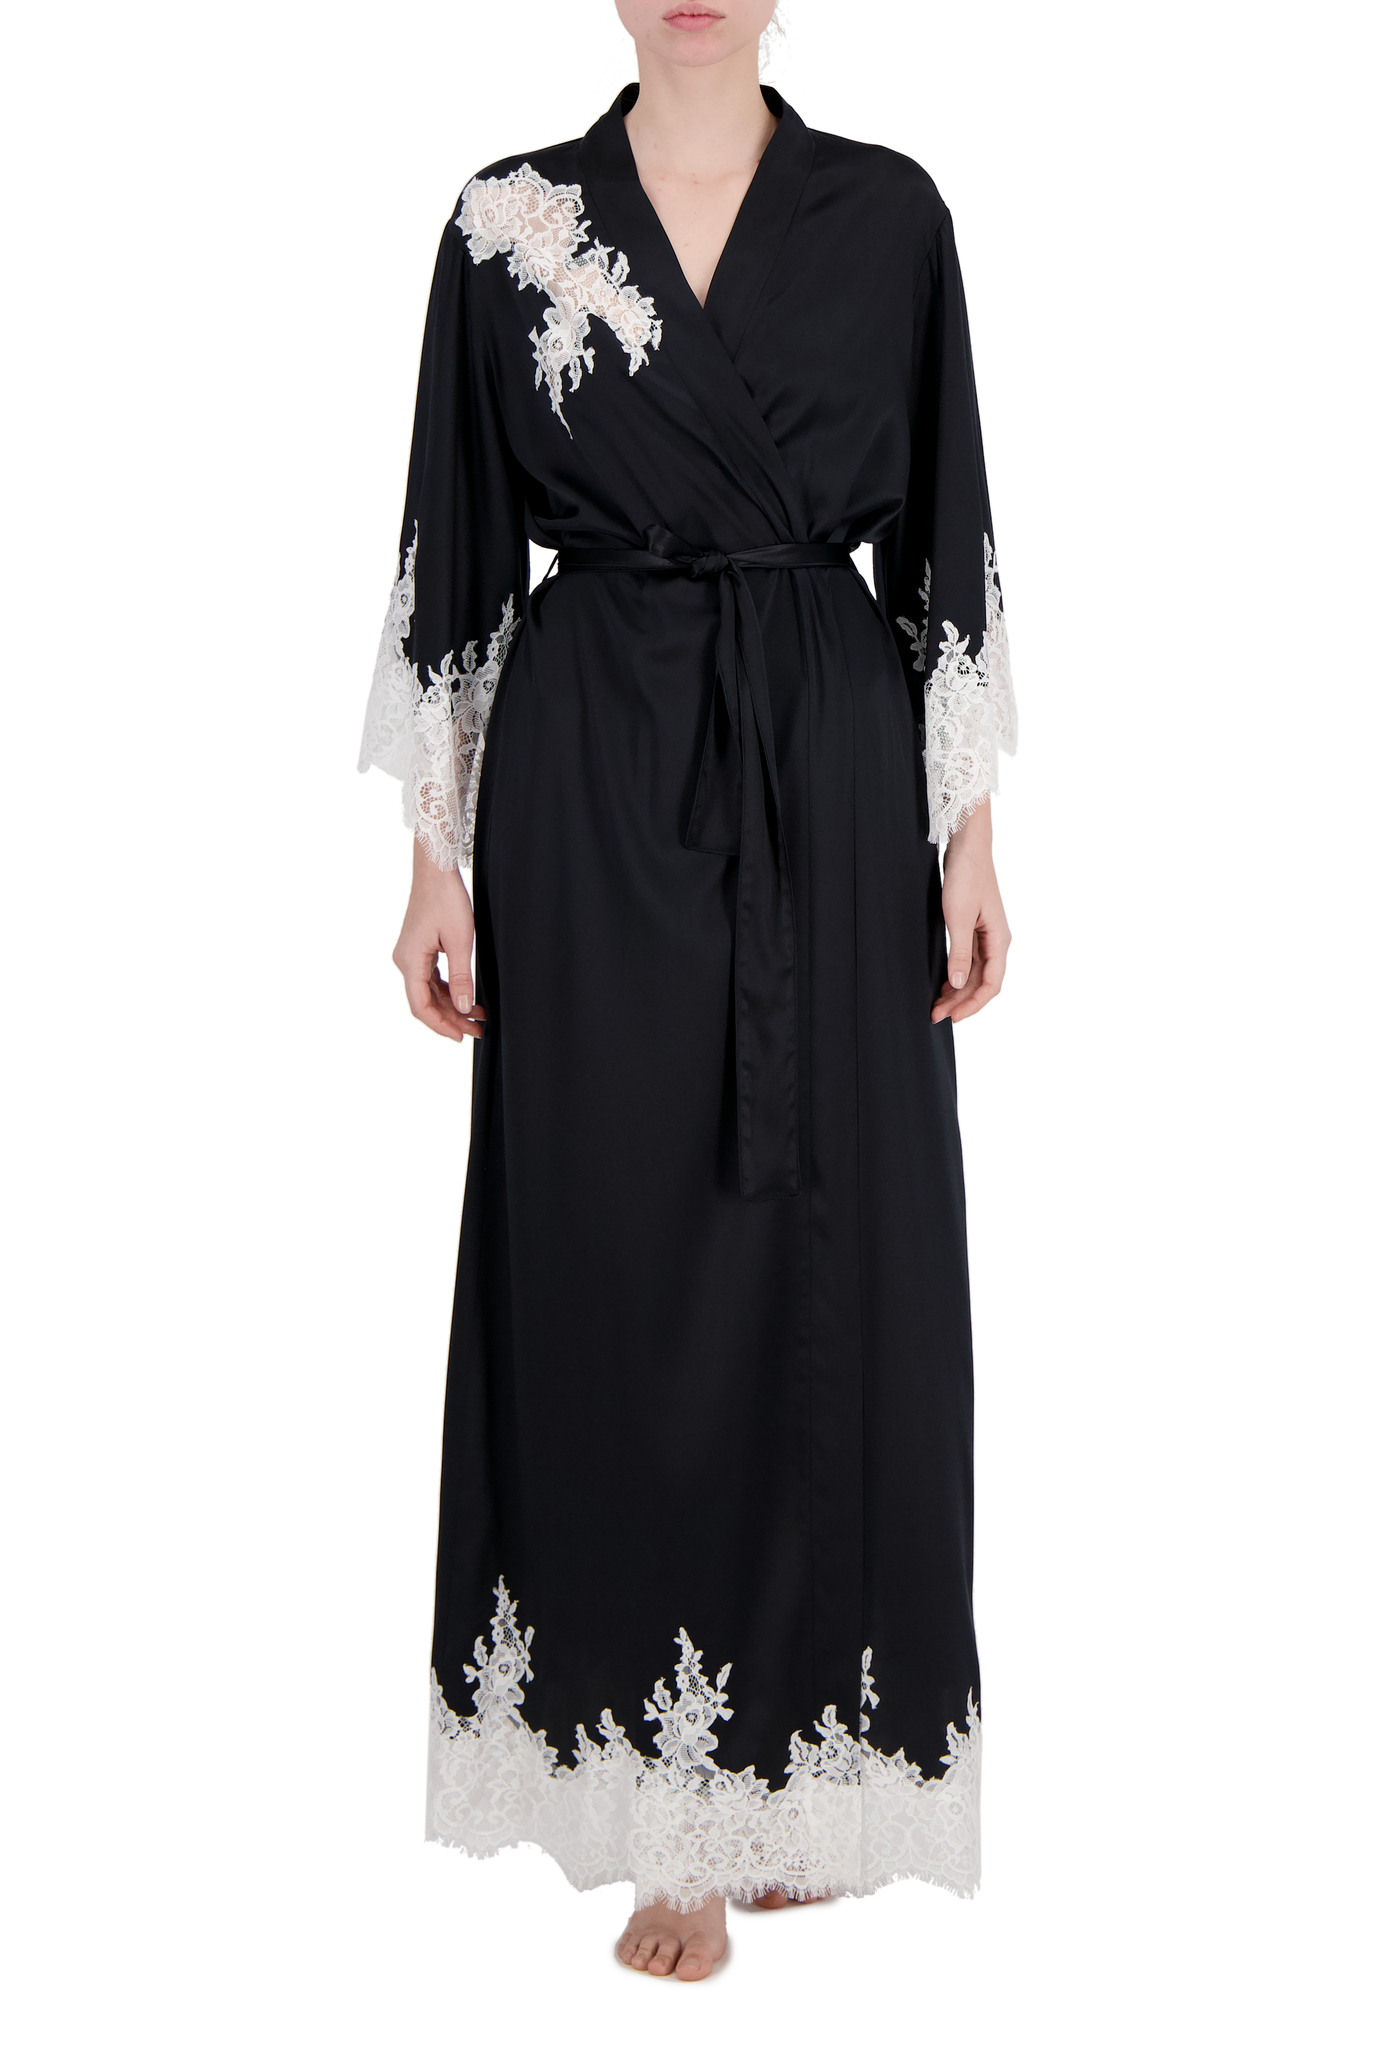 Natali длинный шелковый халат с кружевом